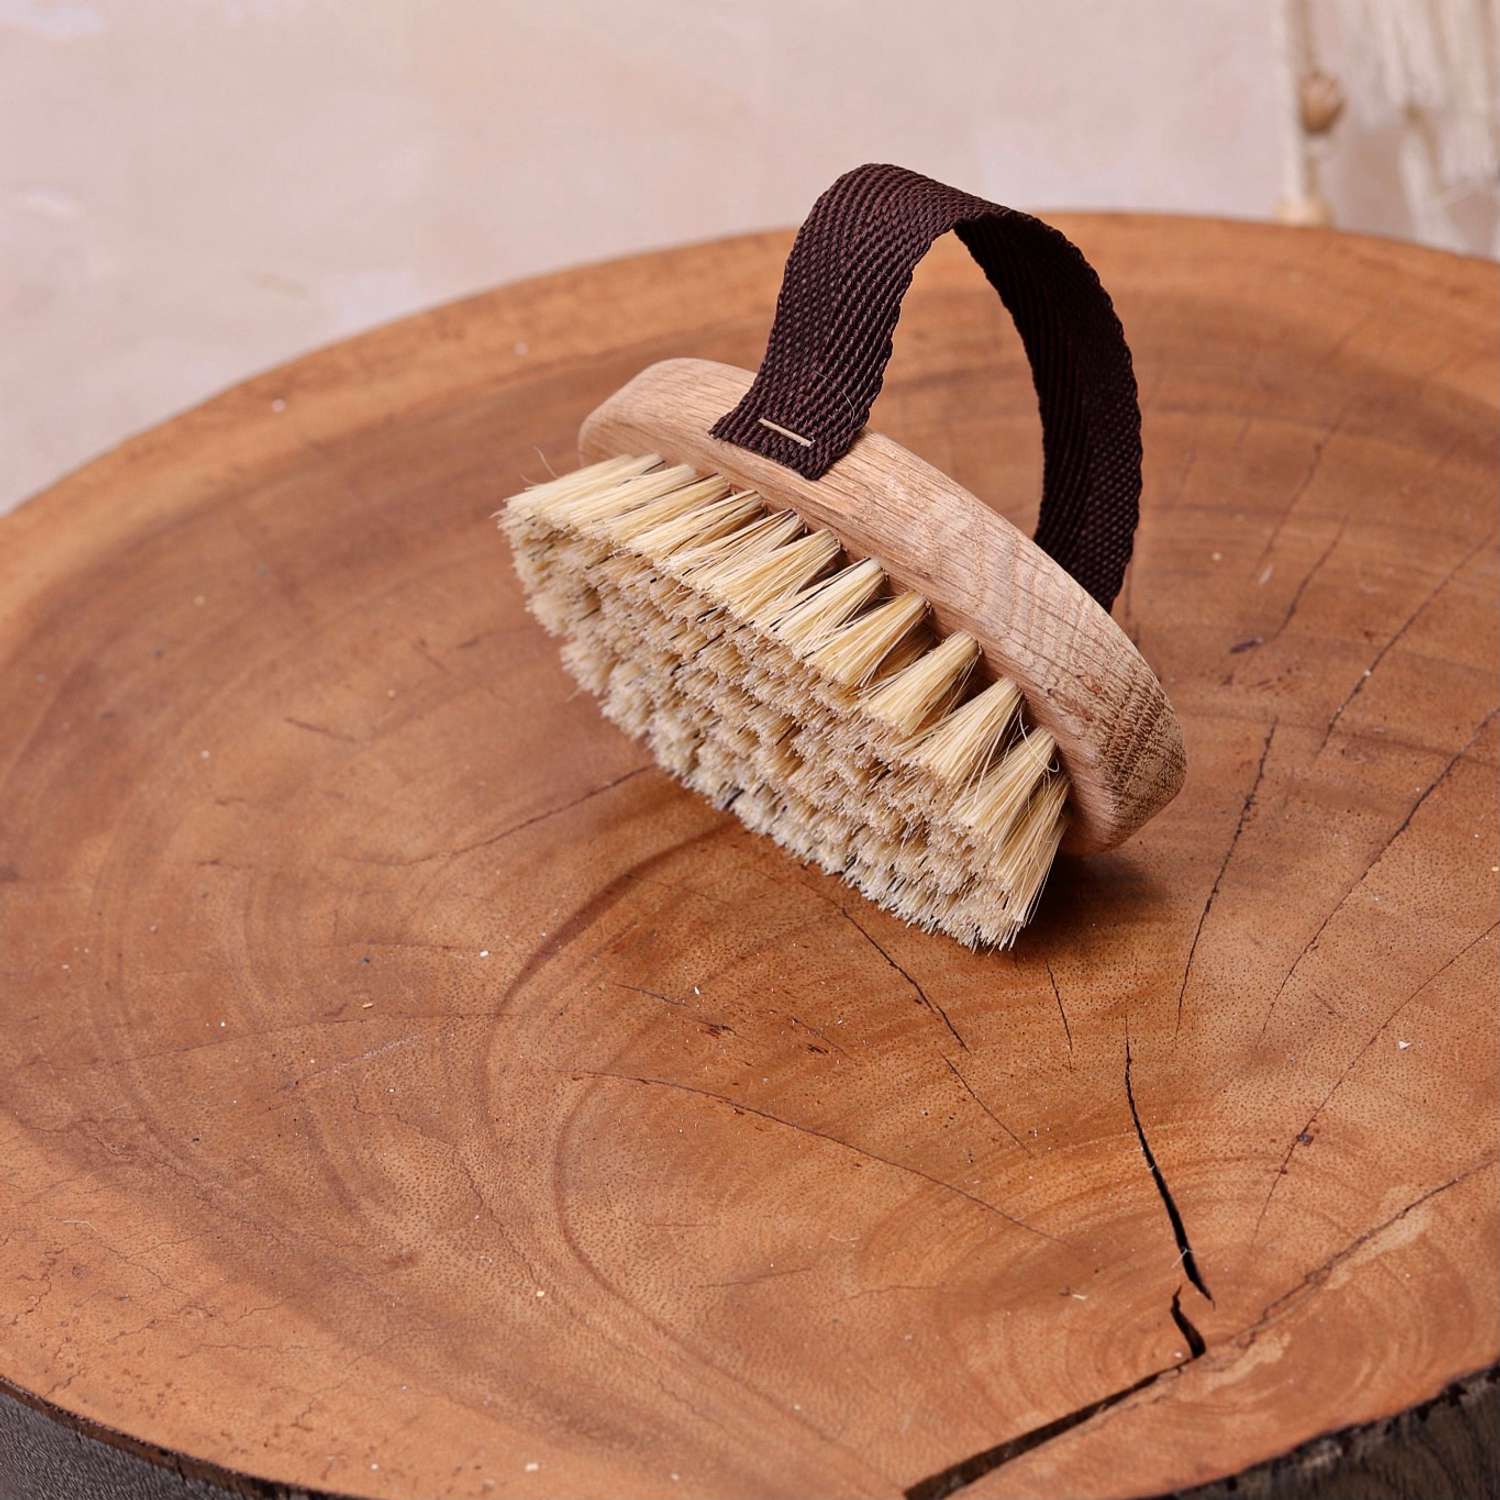 Щетка для тела Grosheff Буковая с ремешком и щетиной кабана для сухого массажа - фото 2